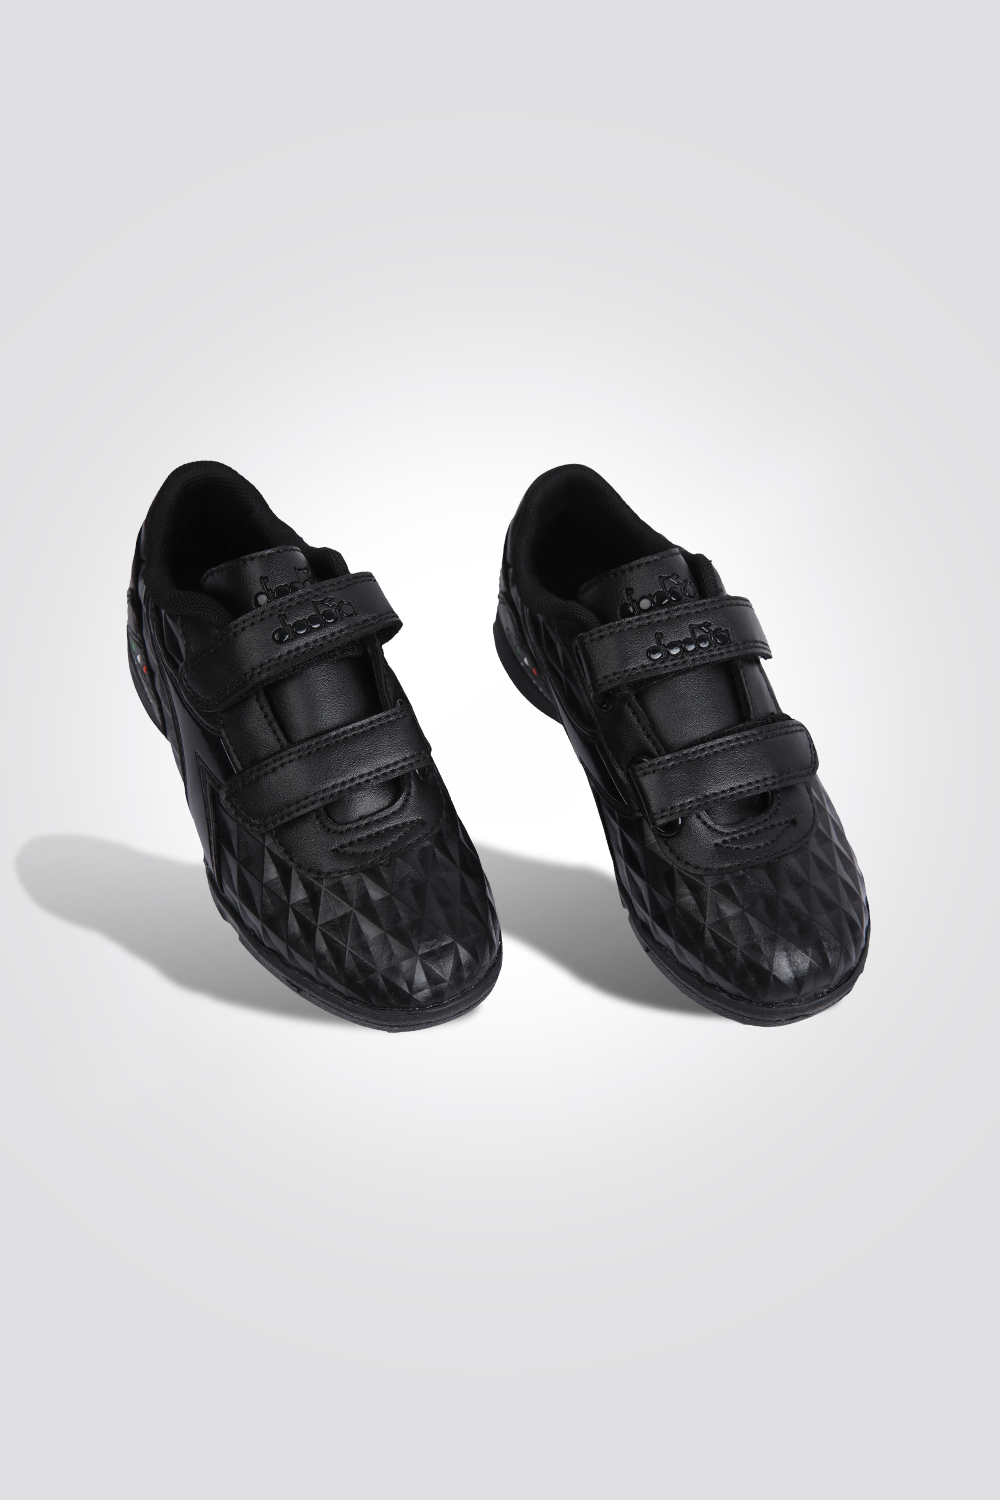 נעלי קטרגל לילדים TF ראול ולק בצבע שחור